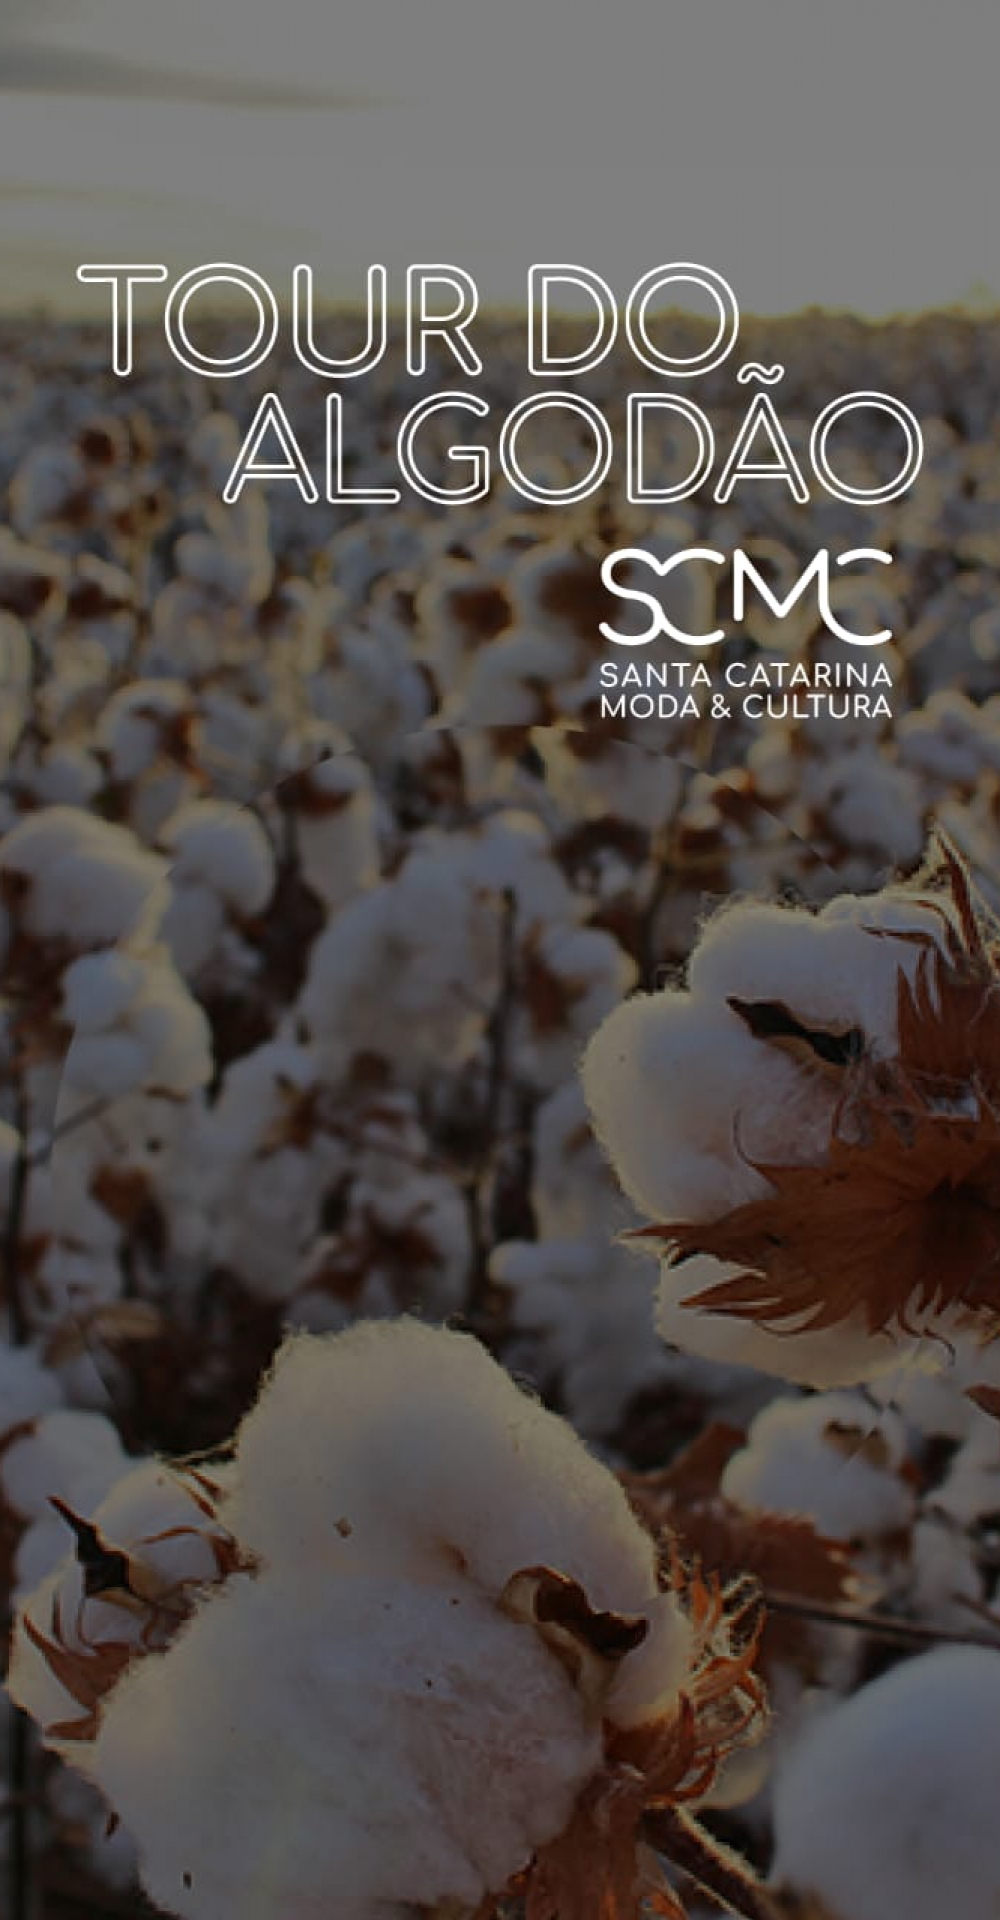 SCMC leva seus associados a um tour pelas lavouras de algodão